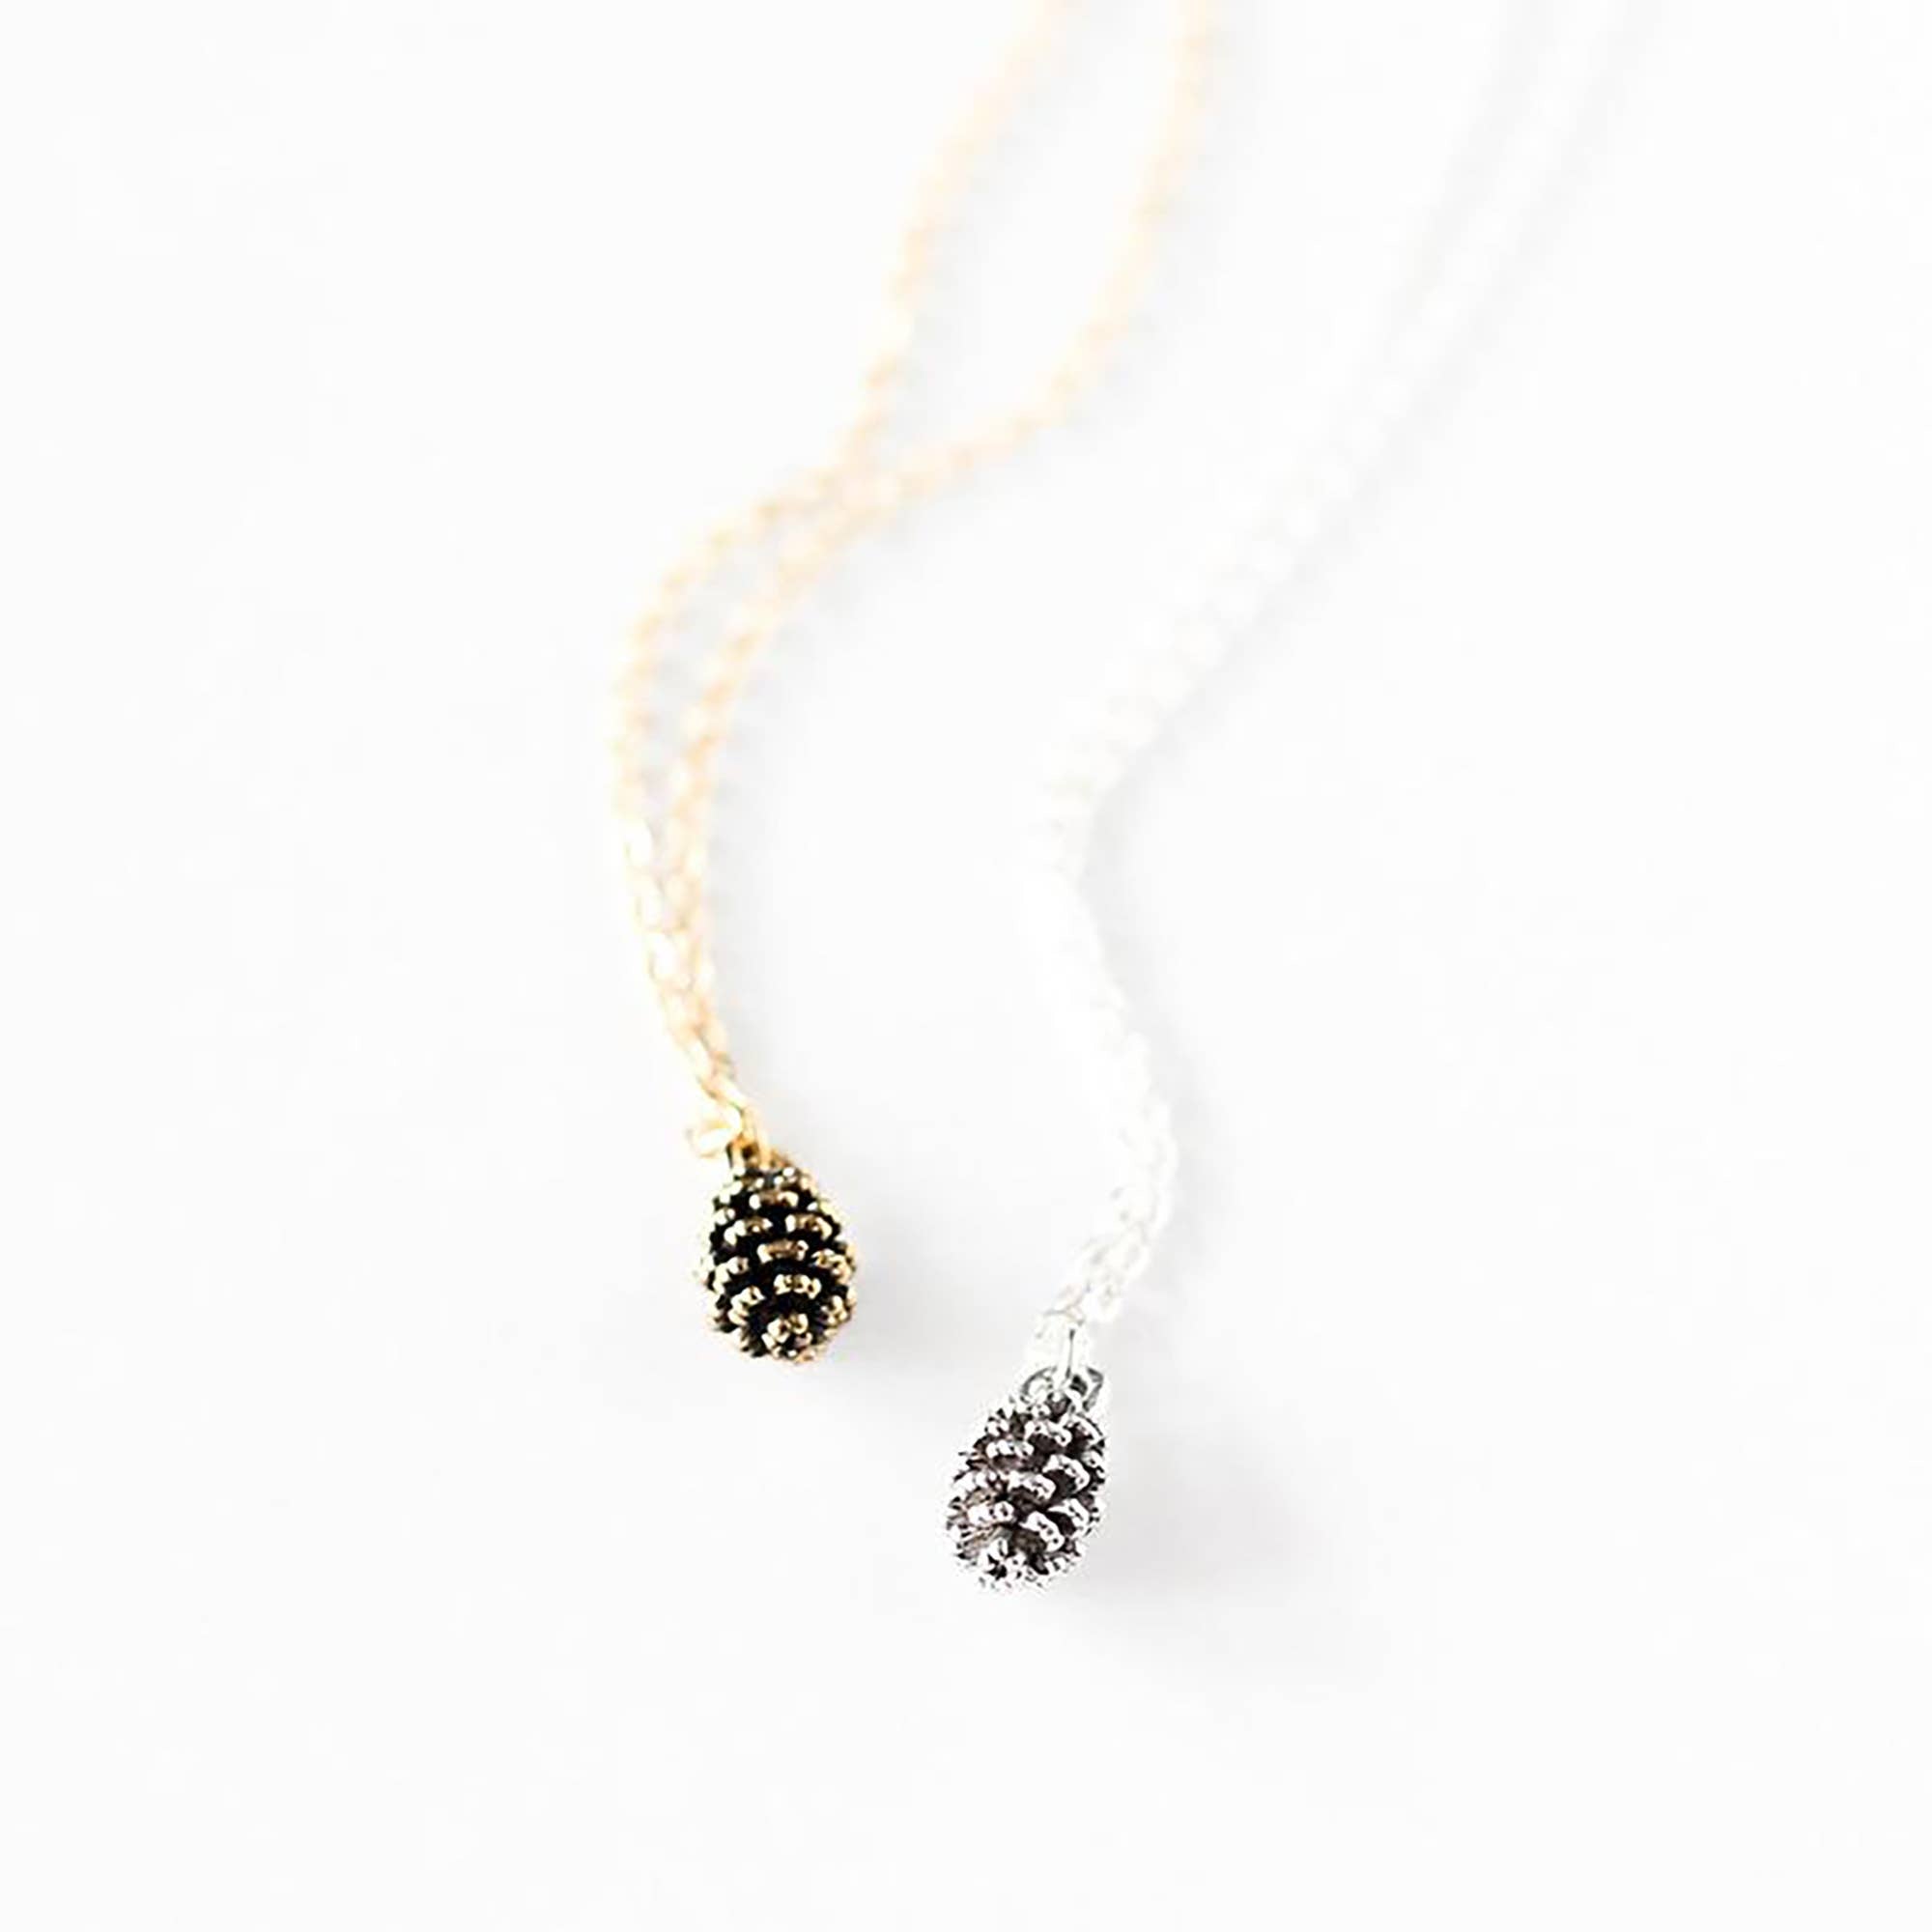 Pine Cone Necklace (Small)